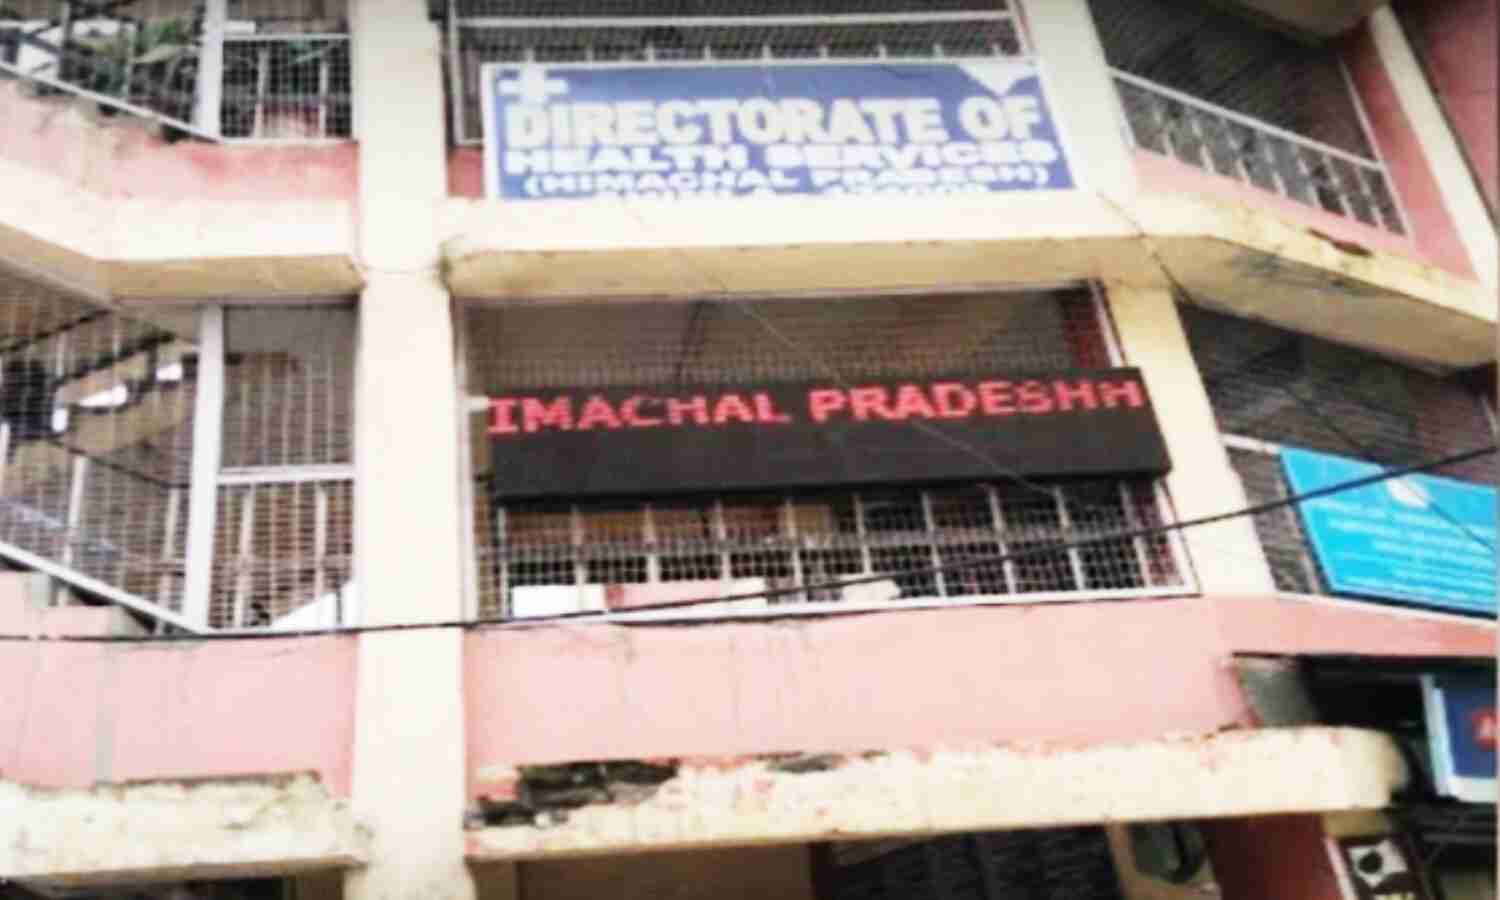 Himachal Pradesh News : स्वास्थ्य विभाग का अनोखा कारनामा, मृतक को दिया प्रमोशन, 15 दिन में ज्वाइनिंग के आदेश